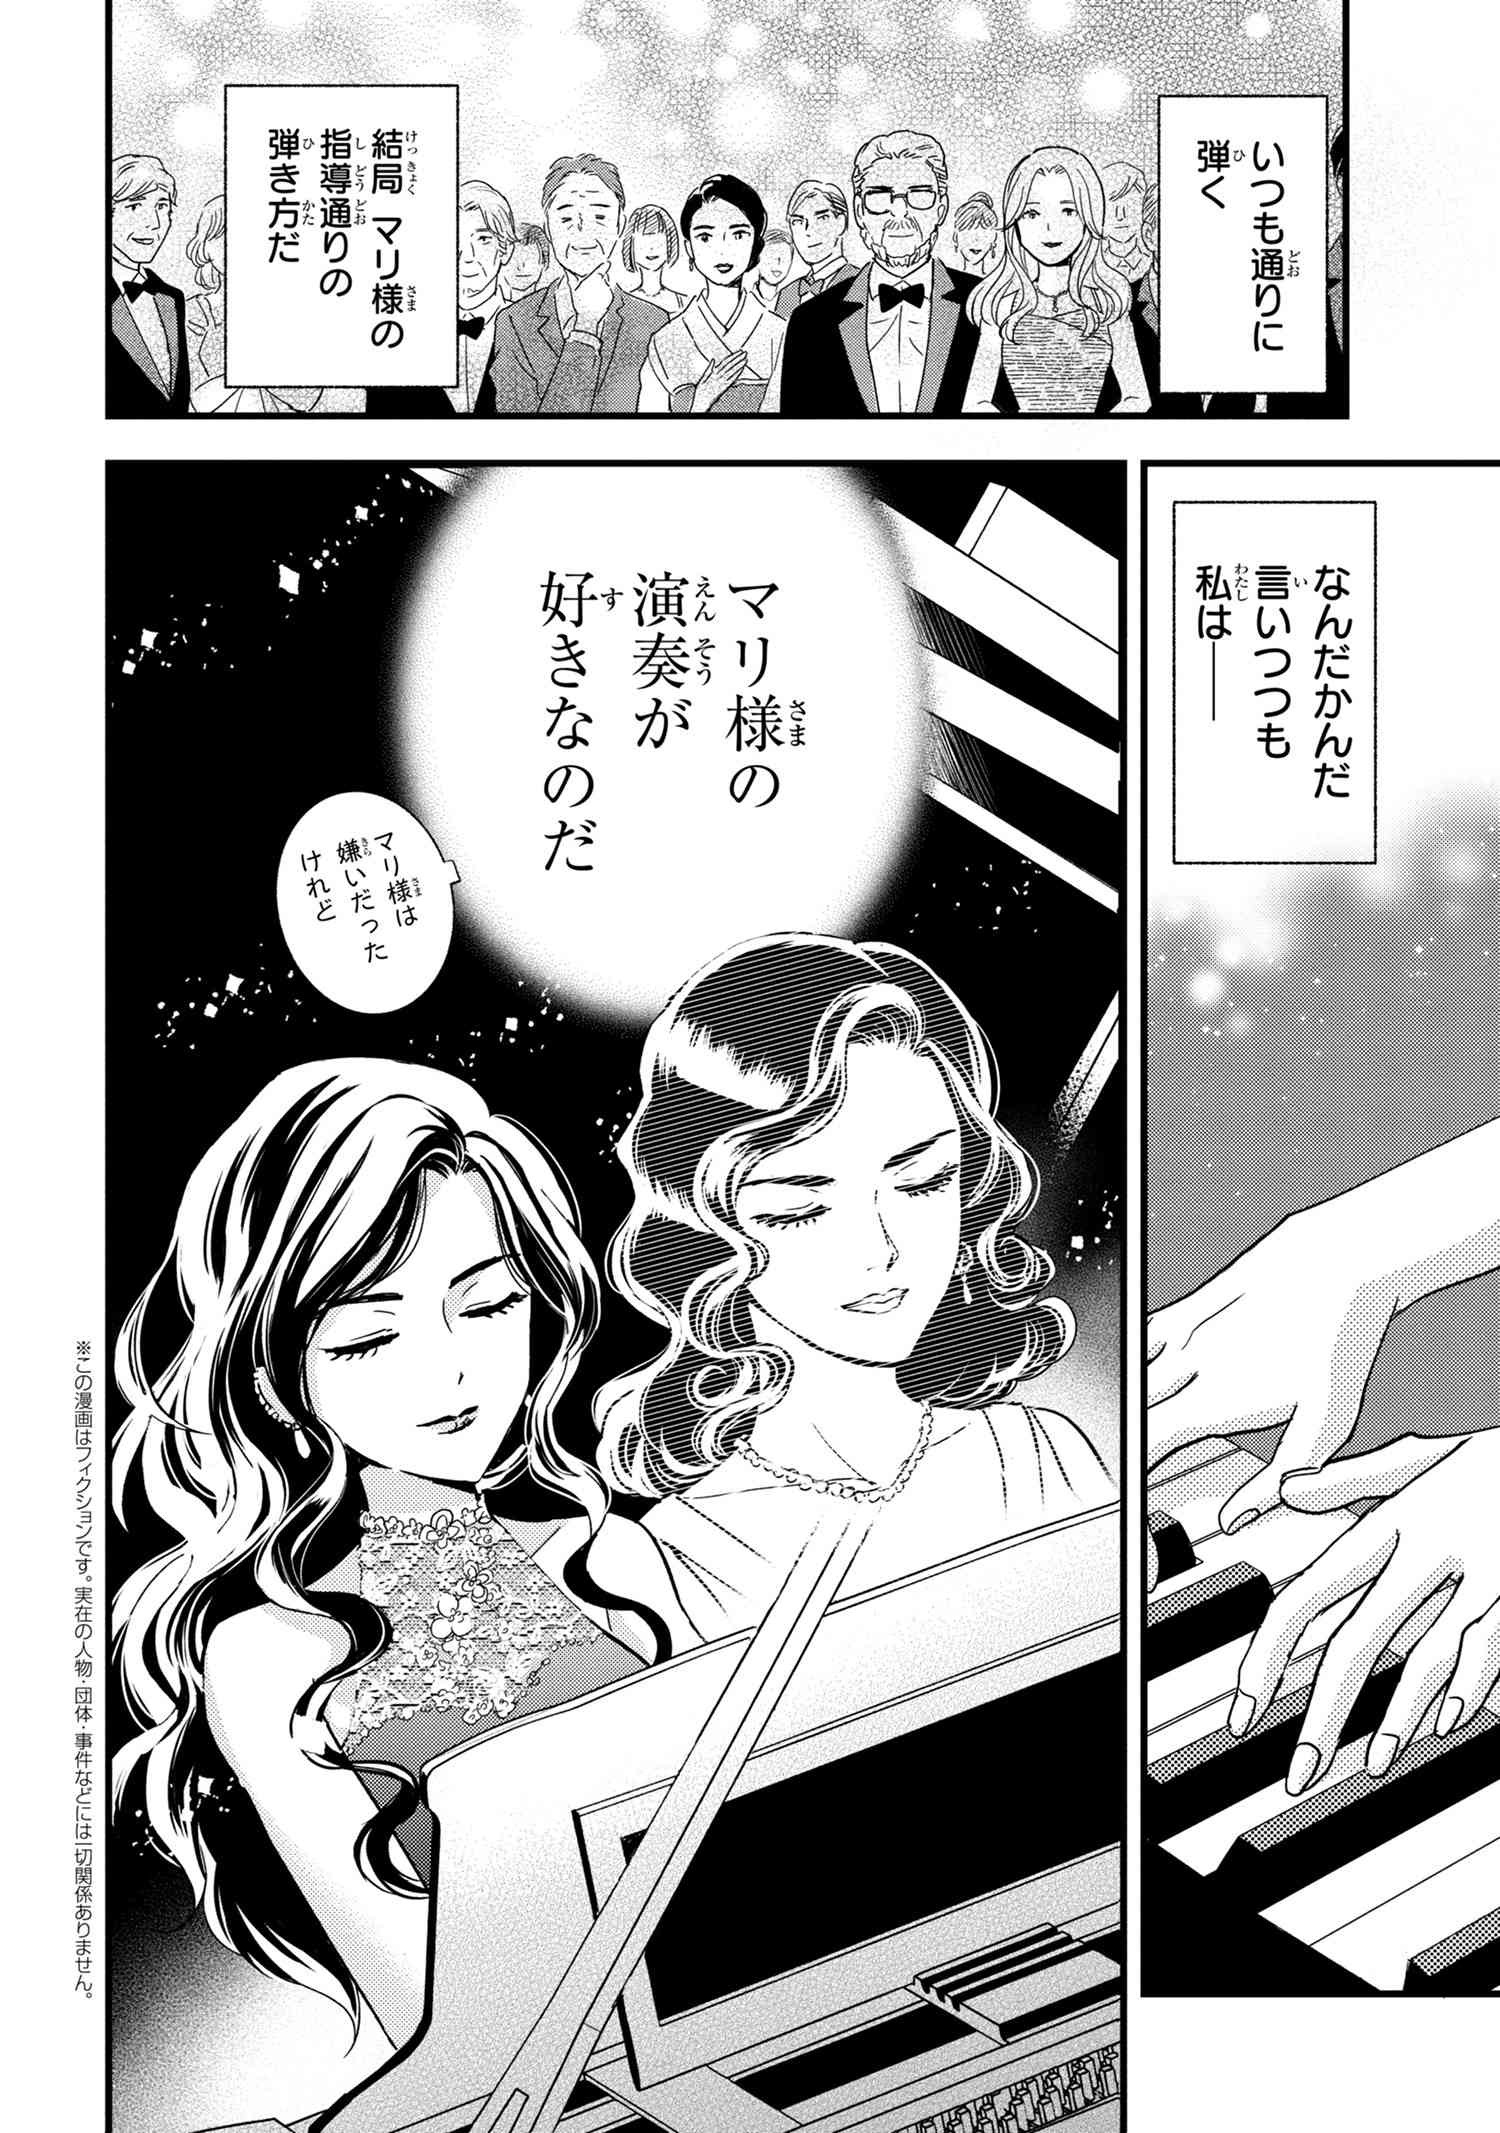 Reiko no Fuugi Akuyaku Reijou to Yobarete imasu ga, tada no Binbou Musume desu - Chapter 14-2 - Page 3